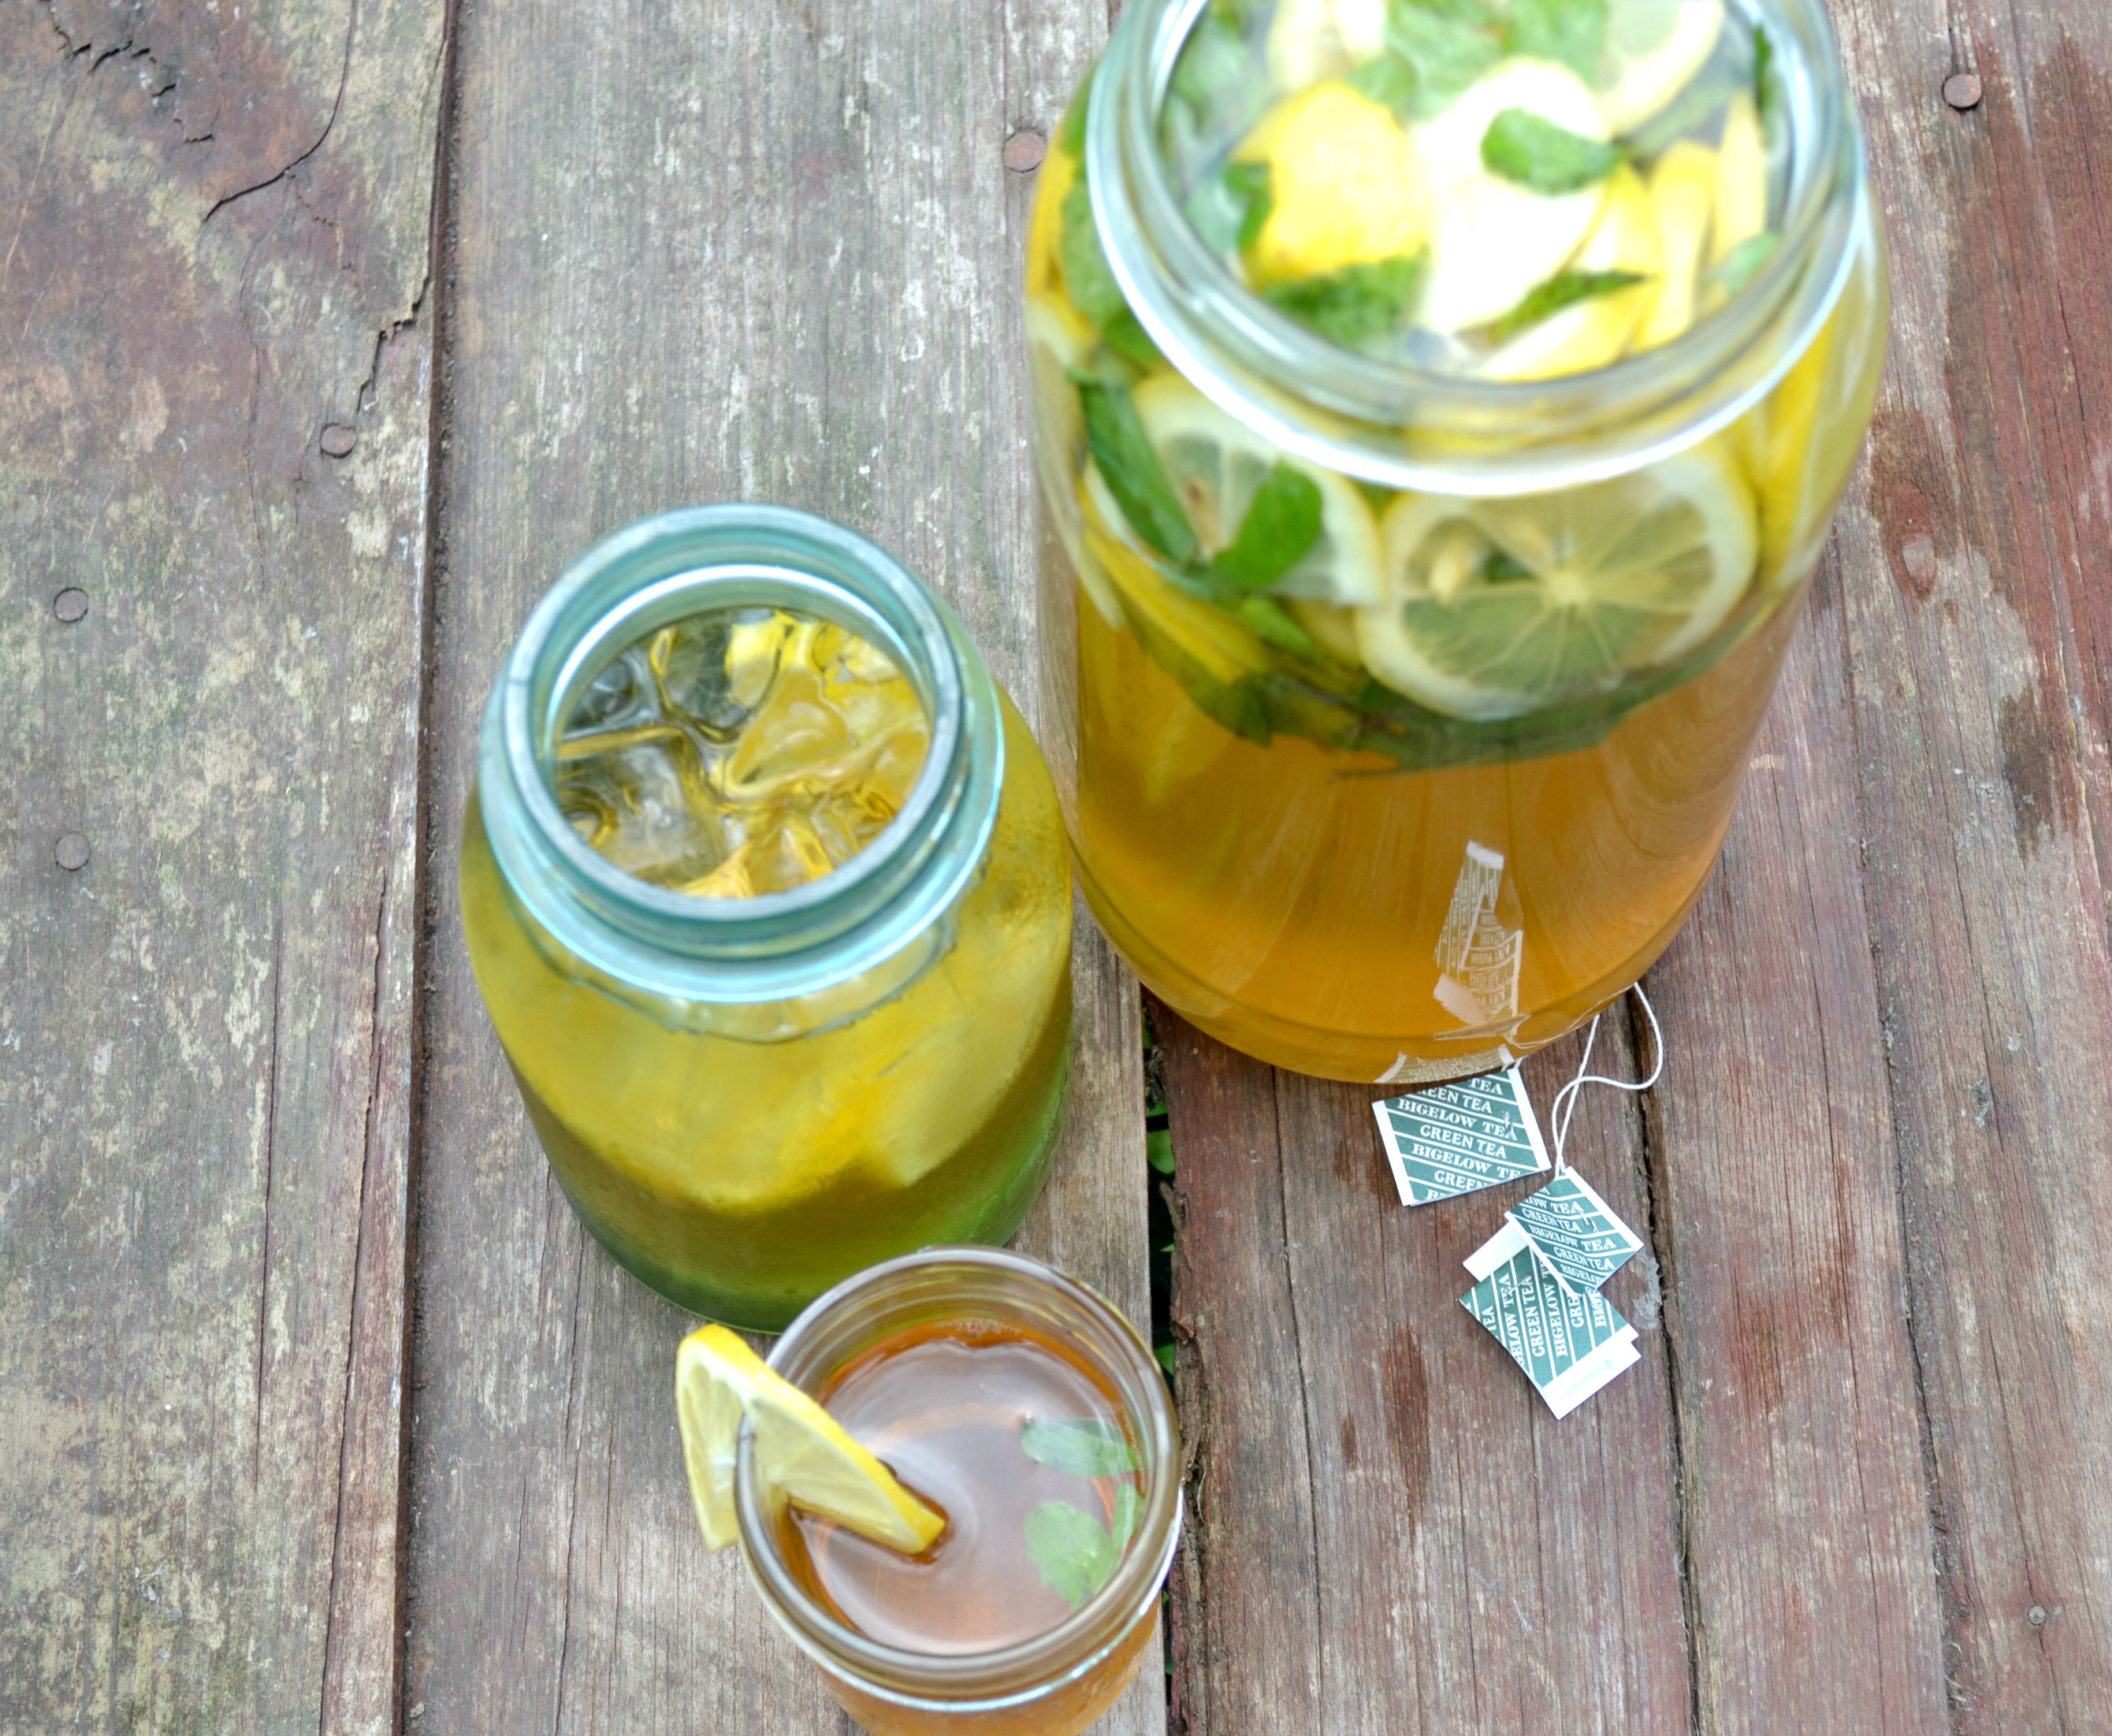 Green Tea Lemon Mint Detox Water for Cleansing